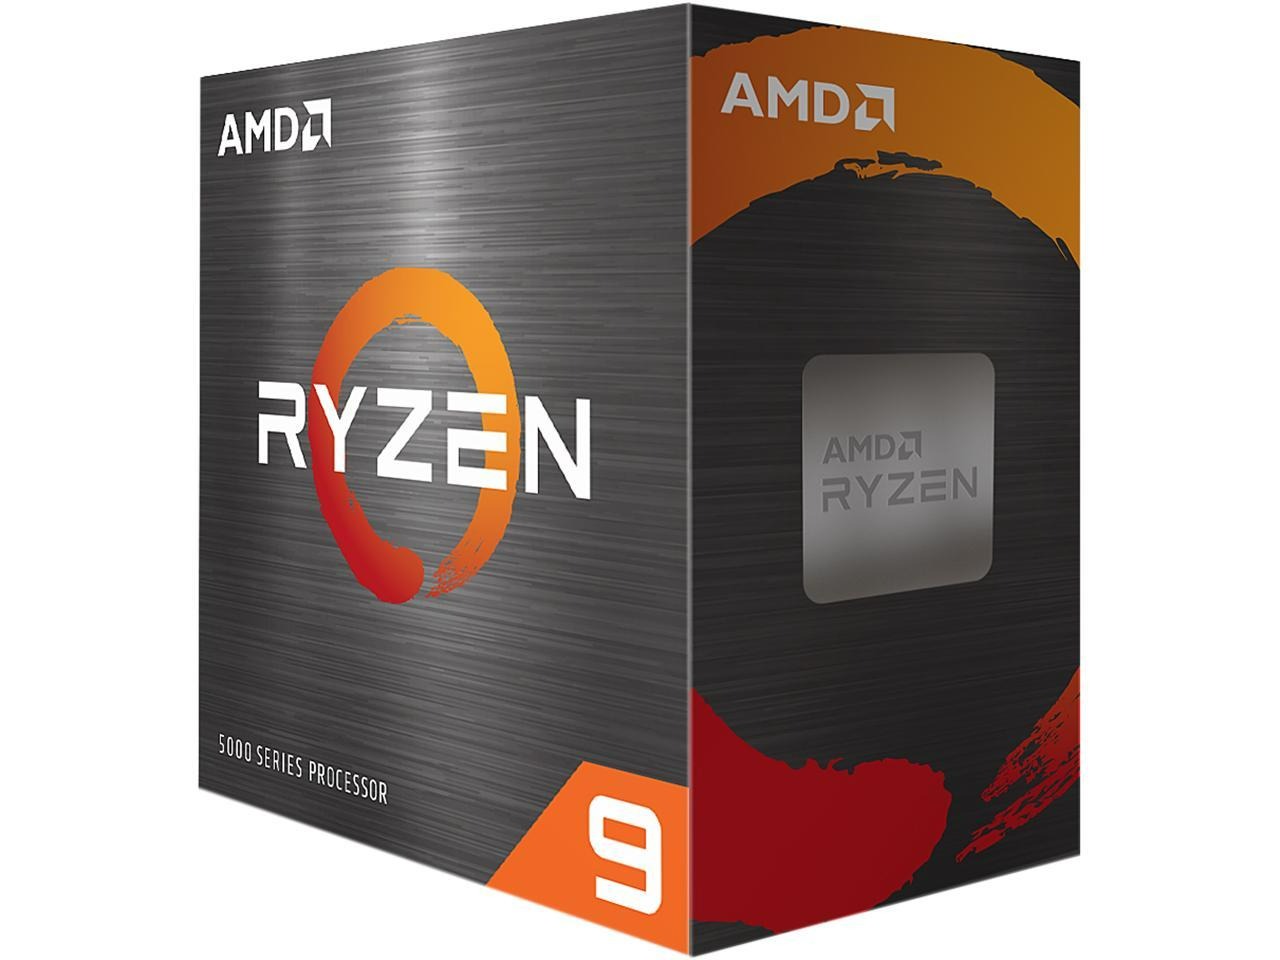 AMD Ryzen 9 5900X 3.7GHz Socket AM4 CPU (12C-24T) $324.99